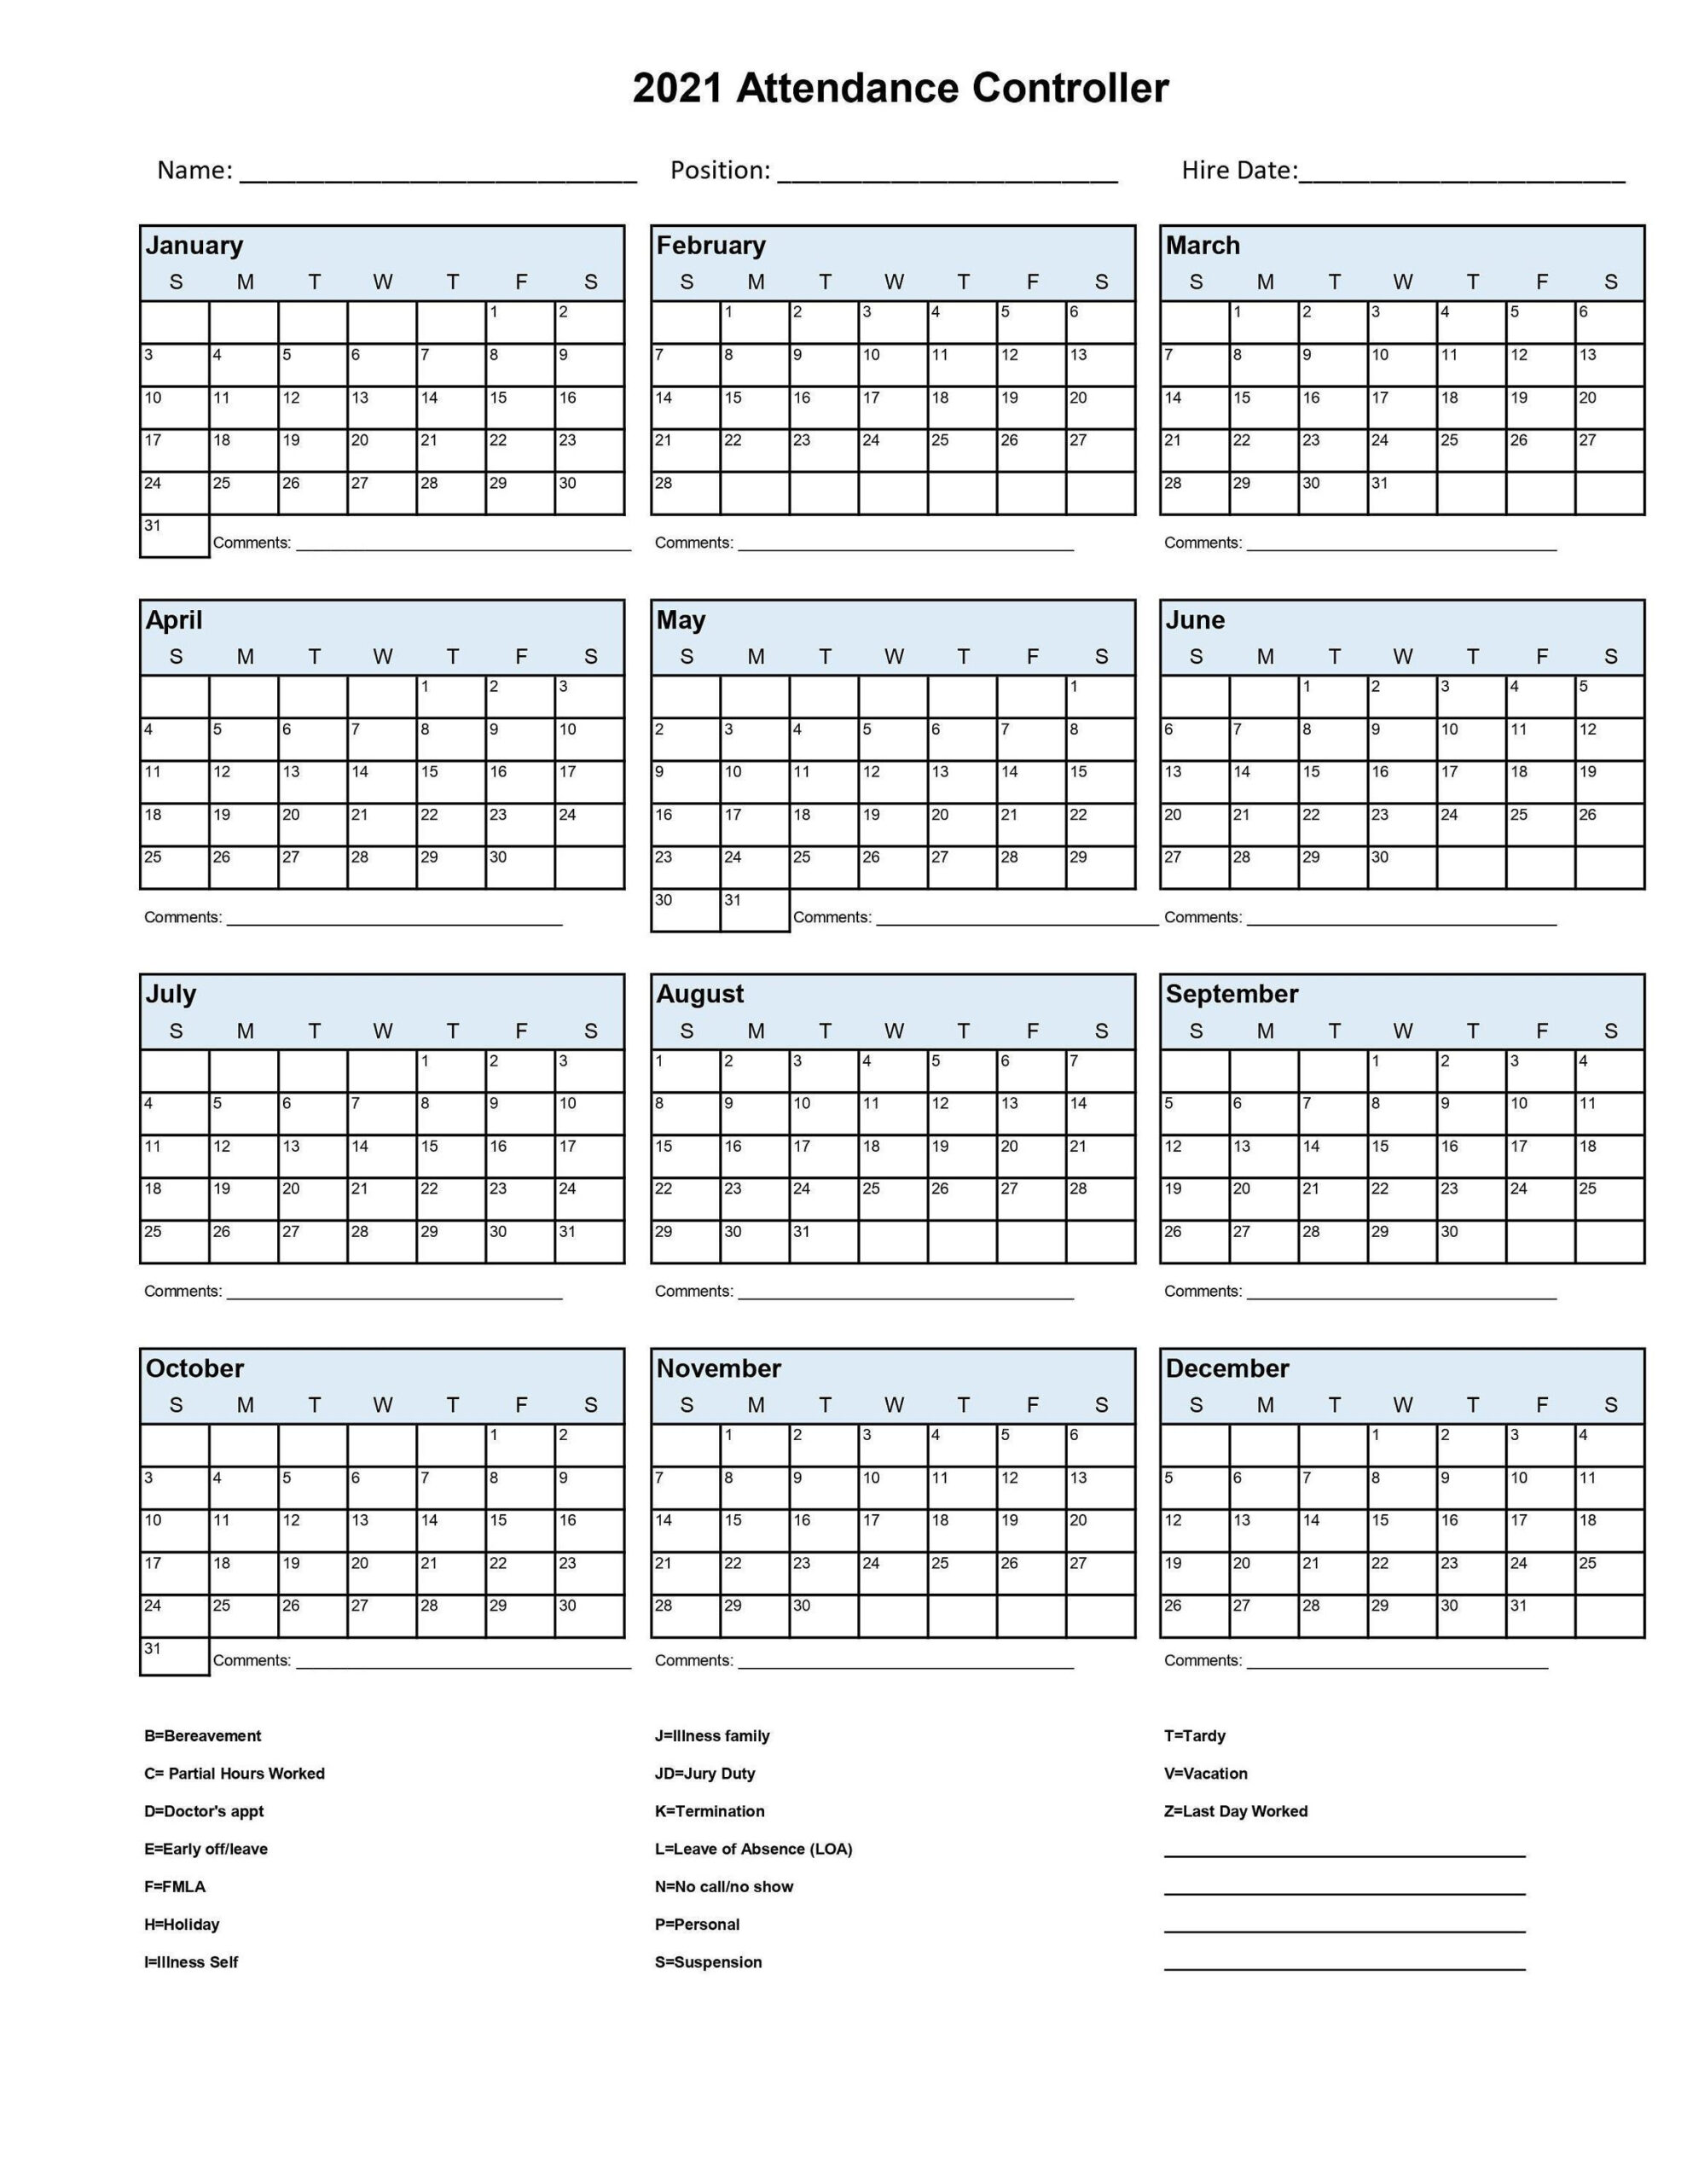 2021 Employee School Attendance Tracker Calendar Employee-2021 Employee Leave Calendar Template Free